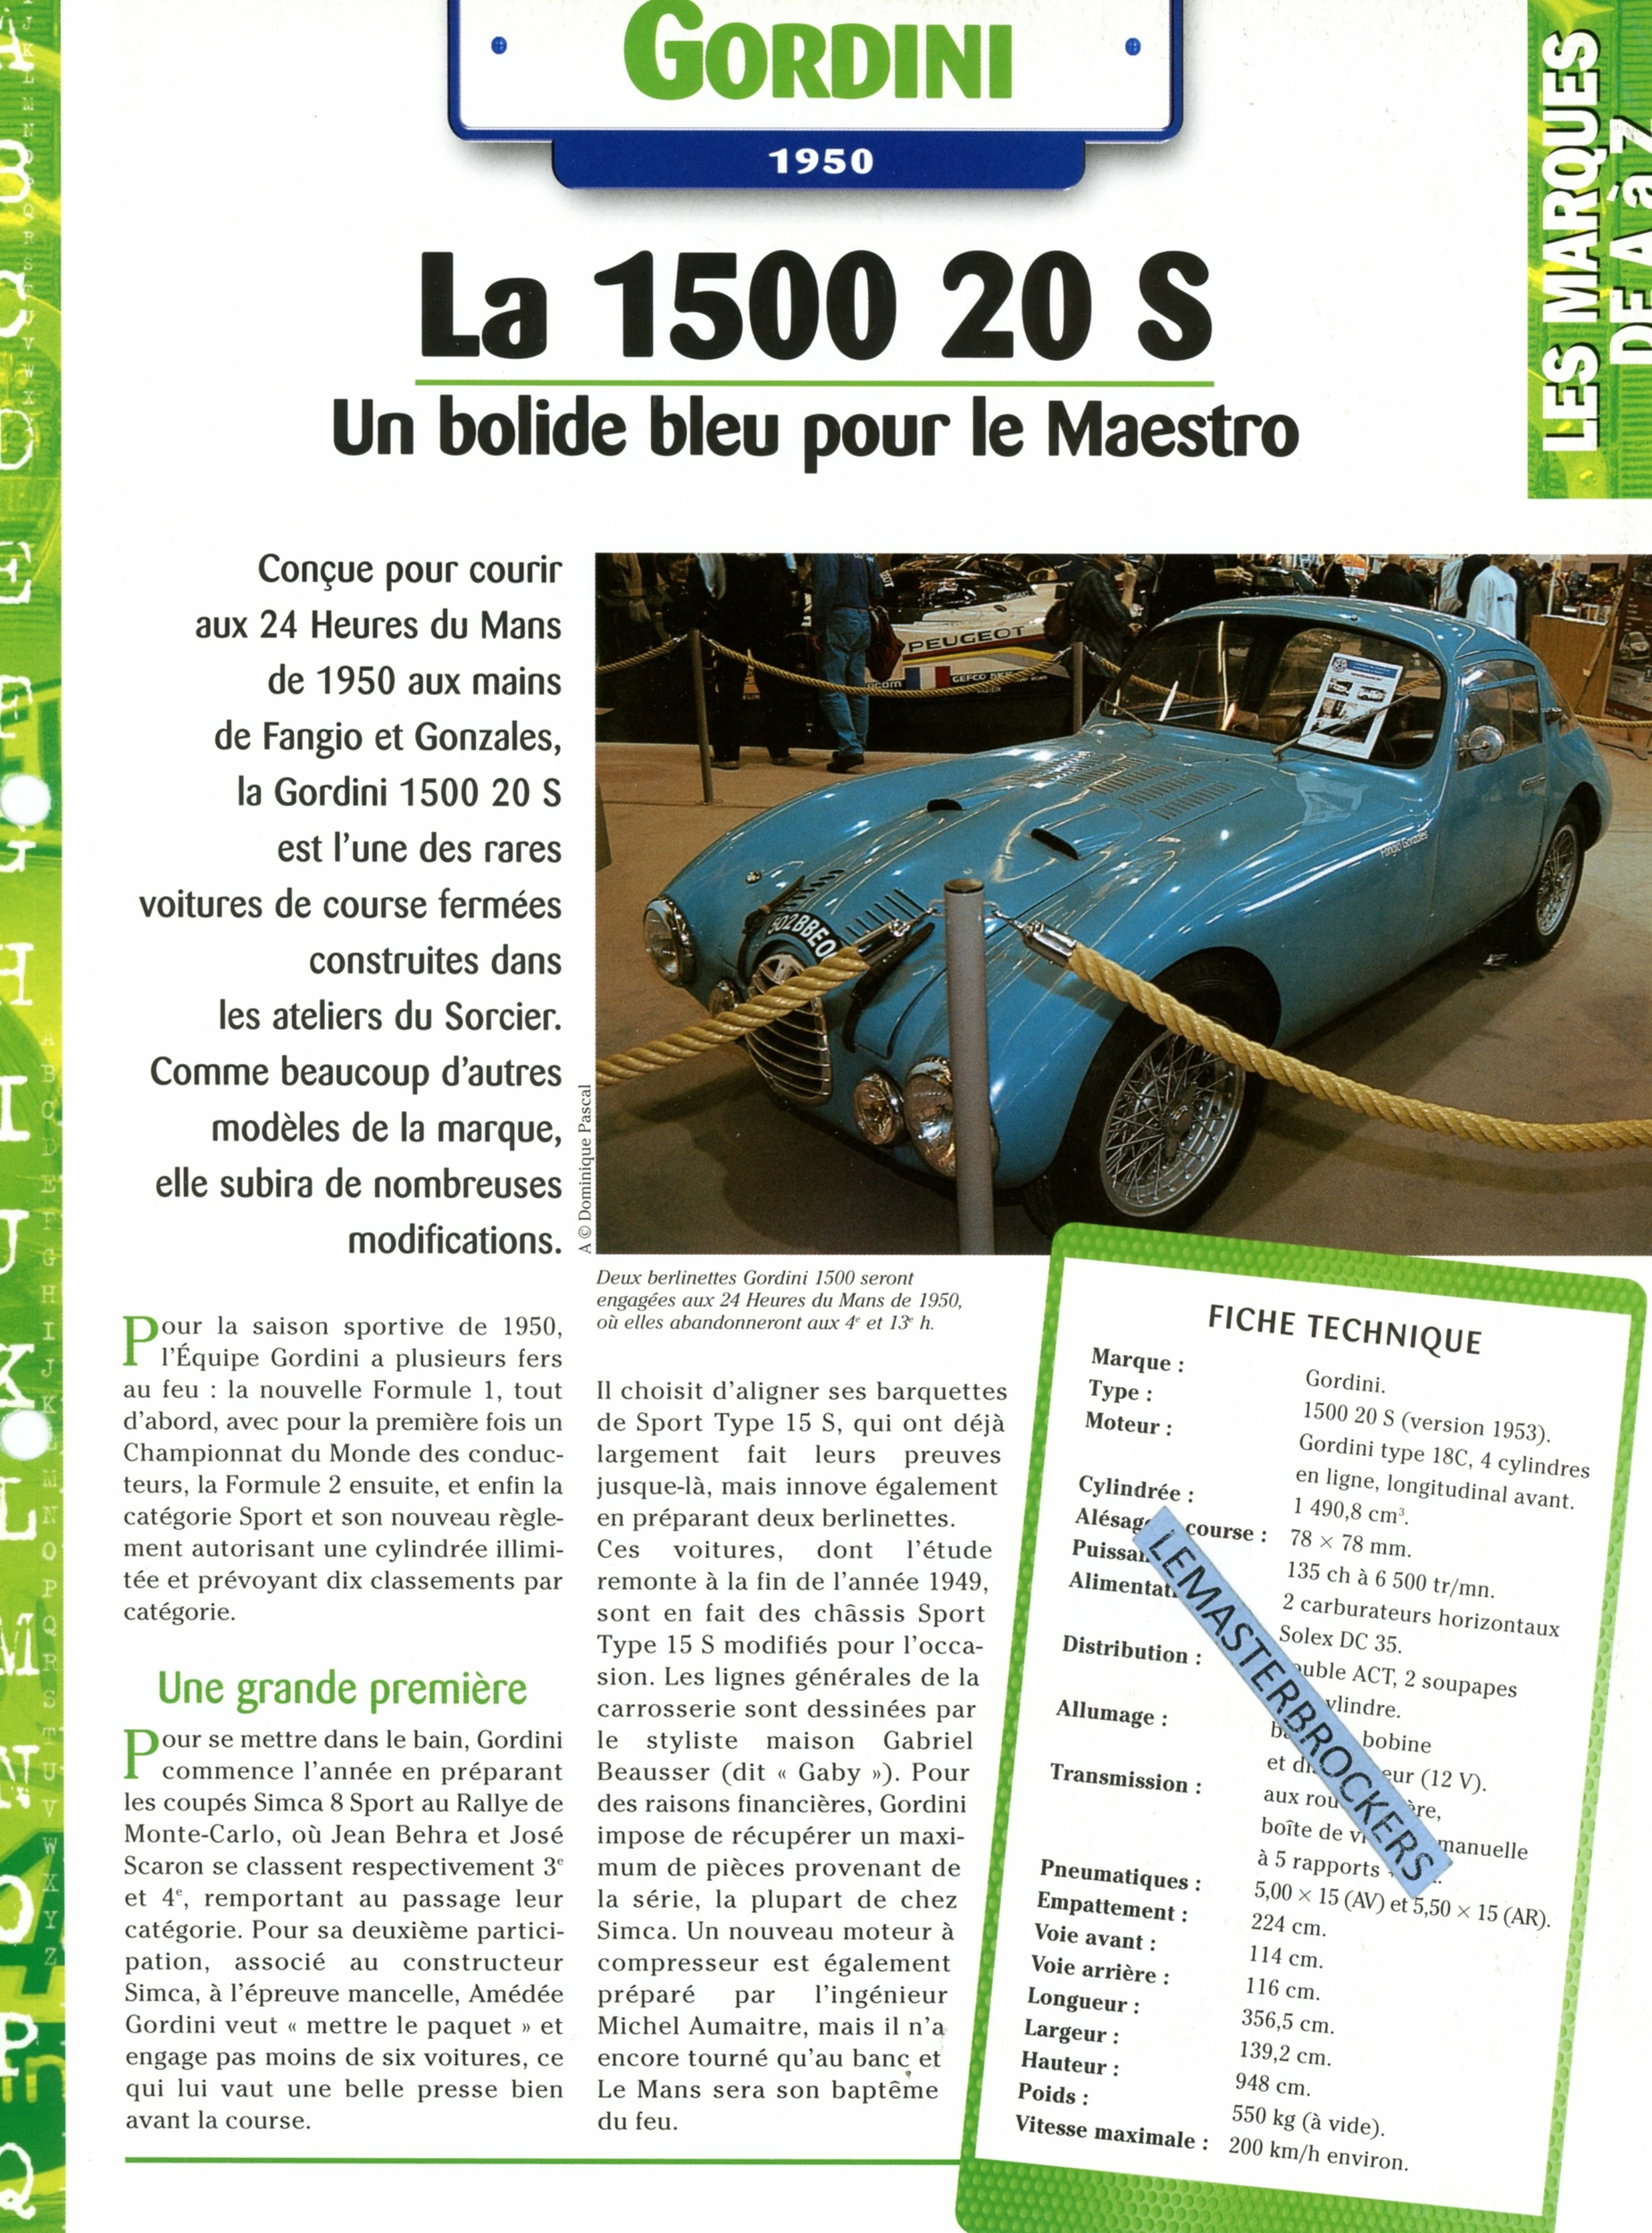 GORDINI 1500 20S 1950 - FICHE AUTO COLLECTION HACHETTE - FICHE TECHNIQUE